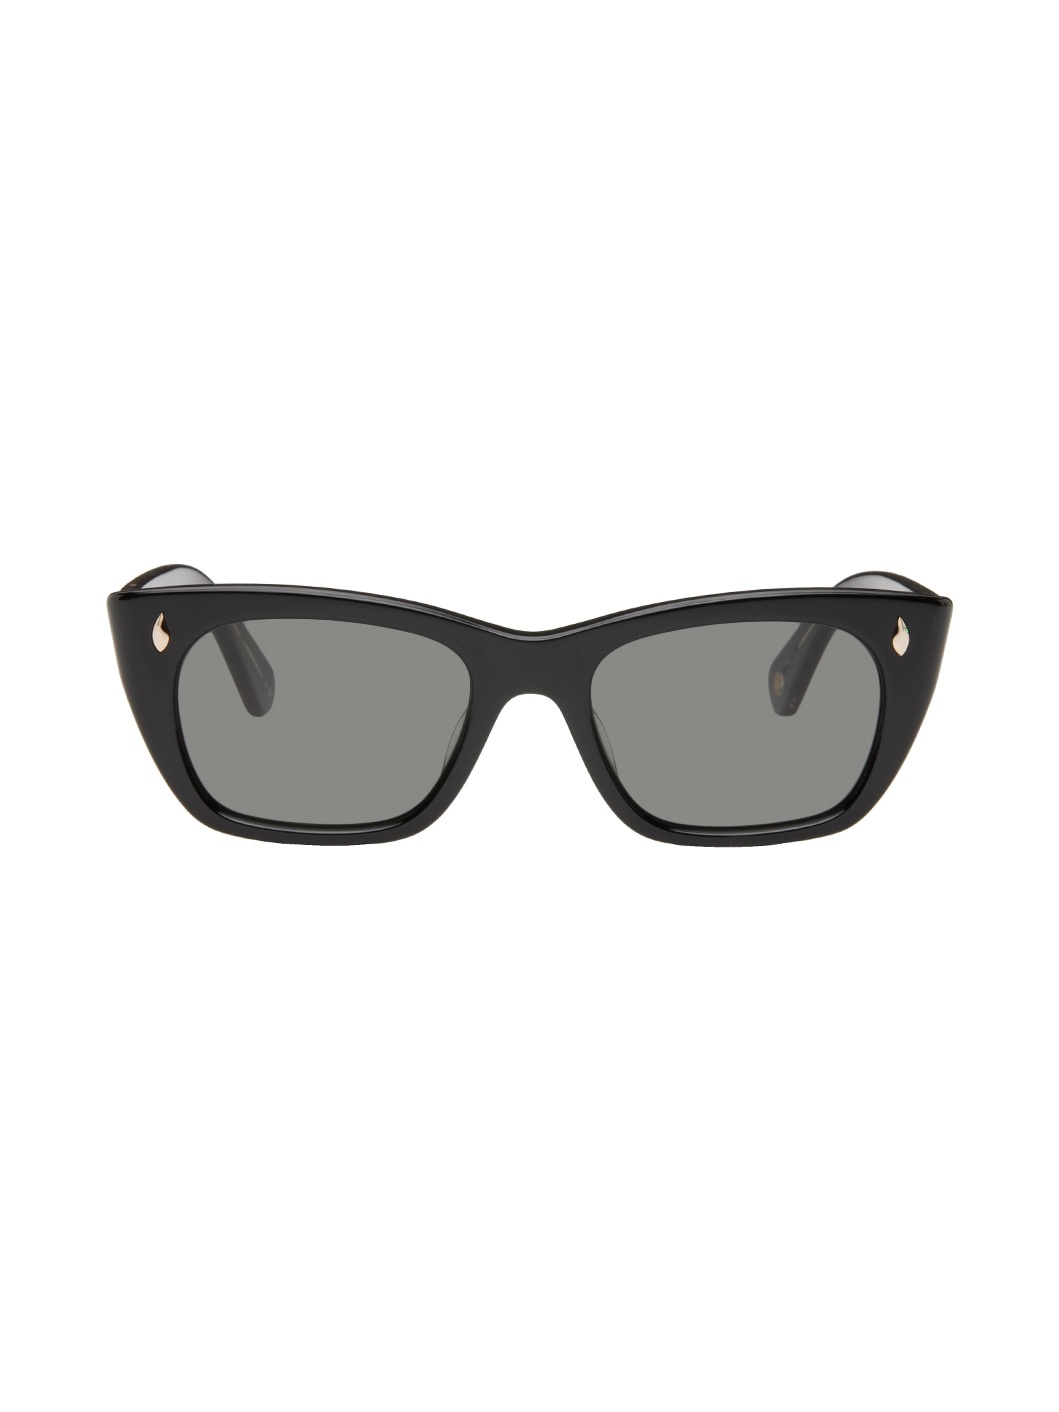 Black Webster Sunglasses - 1